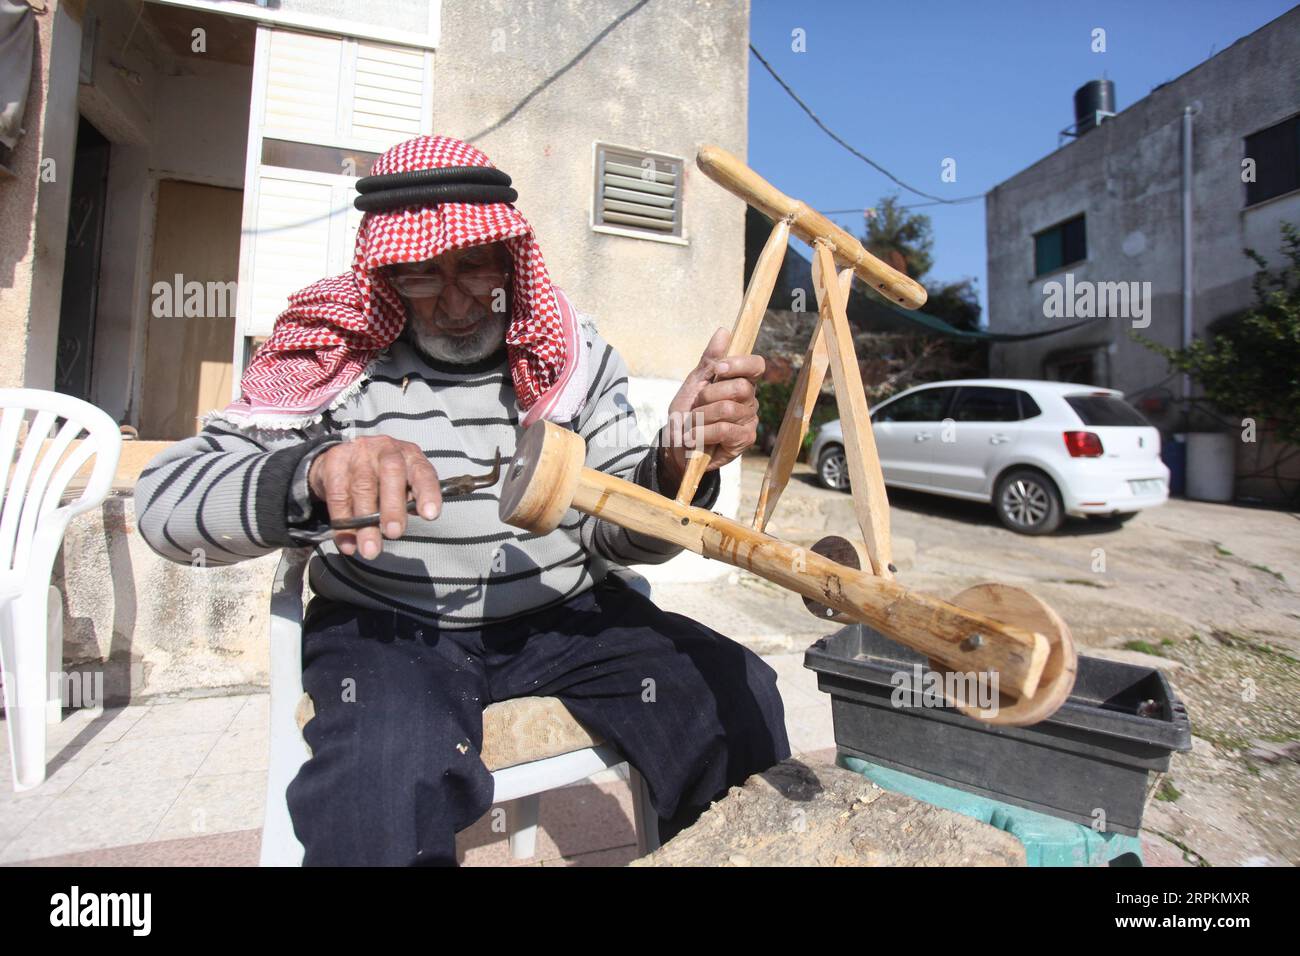 200114 -- JÉNINE, 14 janvier 2020 Xinhua -- le palestinien Mohammad Hussein travaille chez lui dans le village d'A nin, près de la ville de Jénine, au nord de la Cisjordanie, le 14 janvier 2020. Le travail principal de Mohammad Hussein, un vieil homme palestinien de Cisjordanie, est de sculpter du bois en outils agricoles simples et autres œuvres d’art en bois pour protéger l’ancien patrimoine palestinien de la disparition. POUR ALLER AVEC Feature : un aîné palestinien sculpte le bois en chefs-d'œuvre comme moyen de sauver le patrimoine antique photo de Nidal Eshtayeh/Xinhua MIDEAST-JENIN-PALESTINIAN ELDER-HERITAGE PUBLICATIONxNOTxINxCHN Banque D'Images